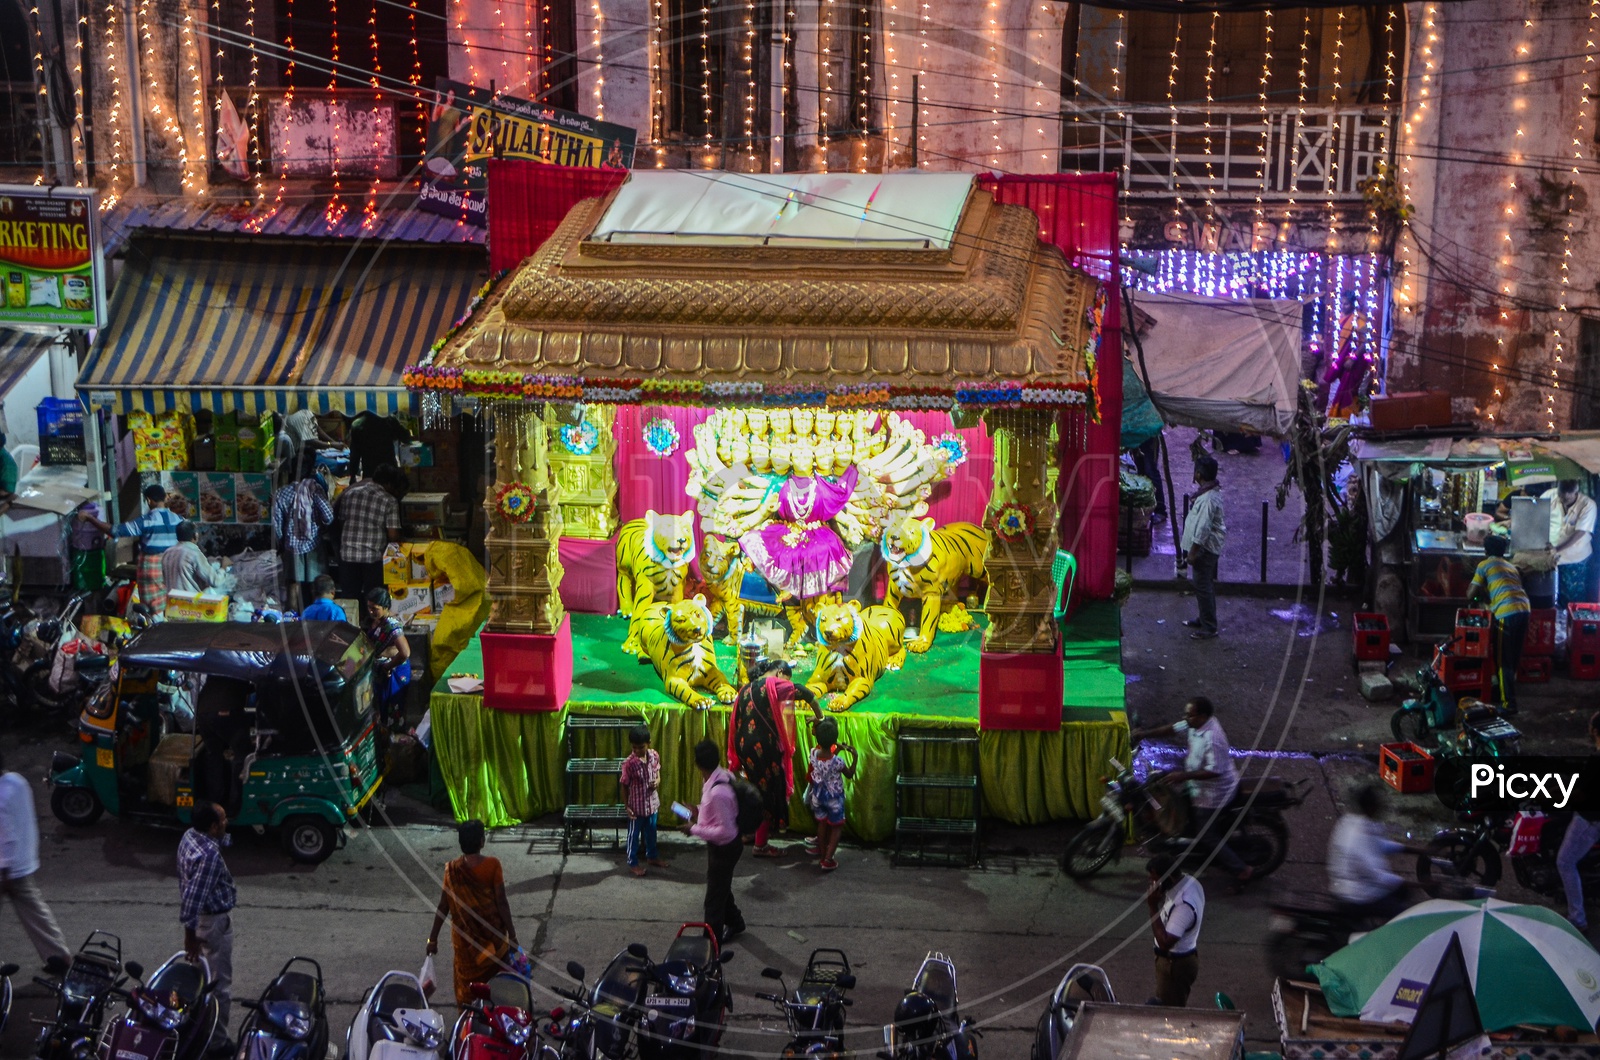 Durga pooja pandal at kaleswara rao market during Dussehra festival